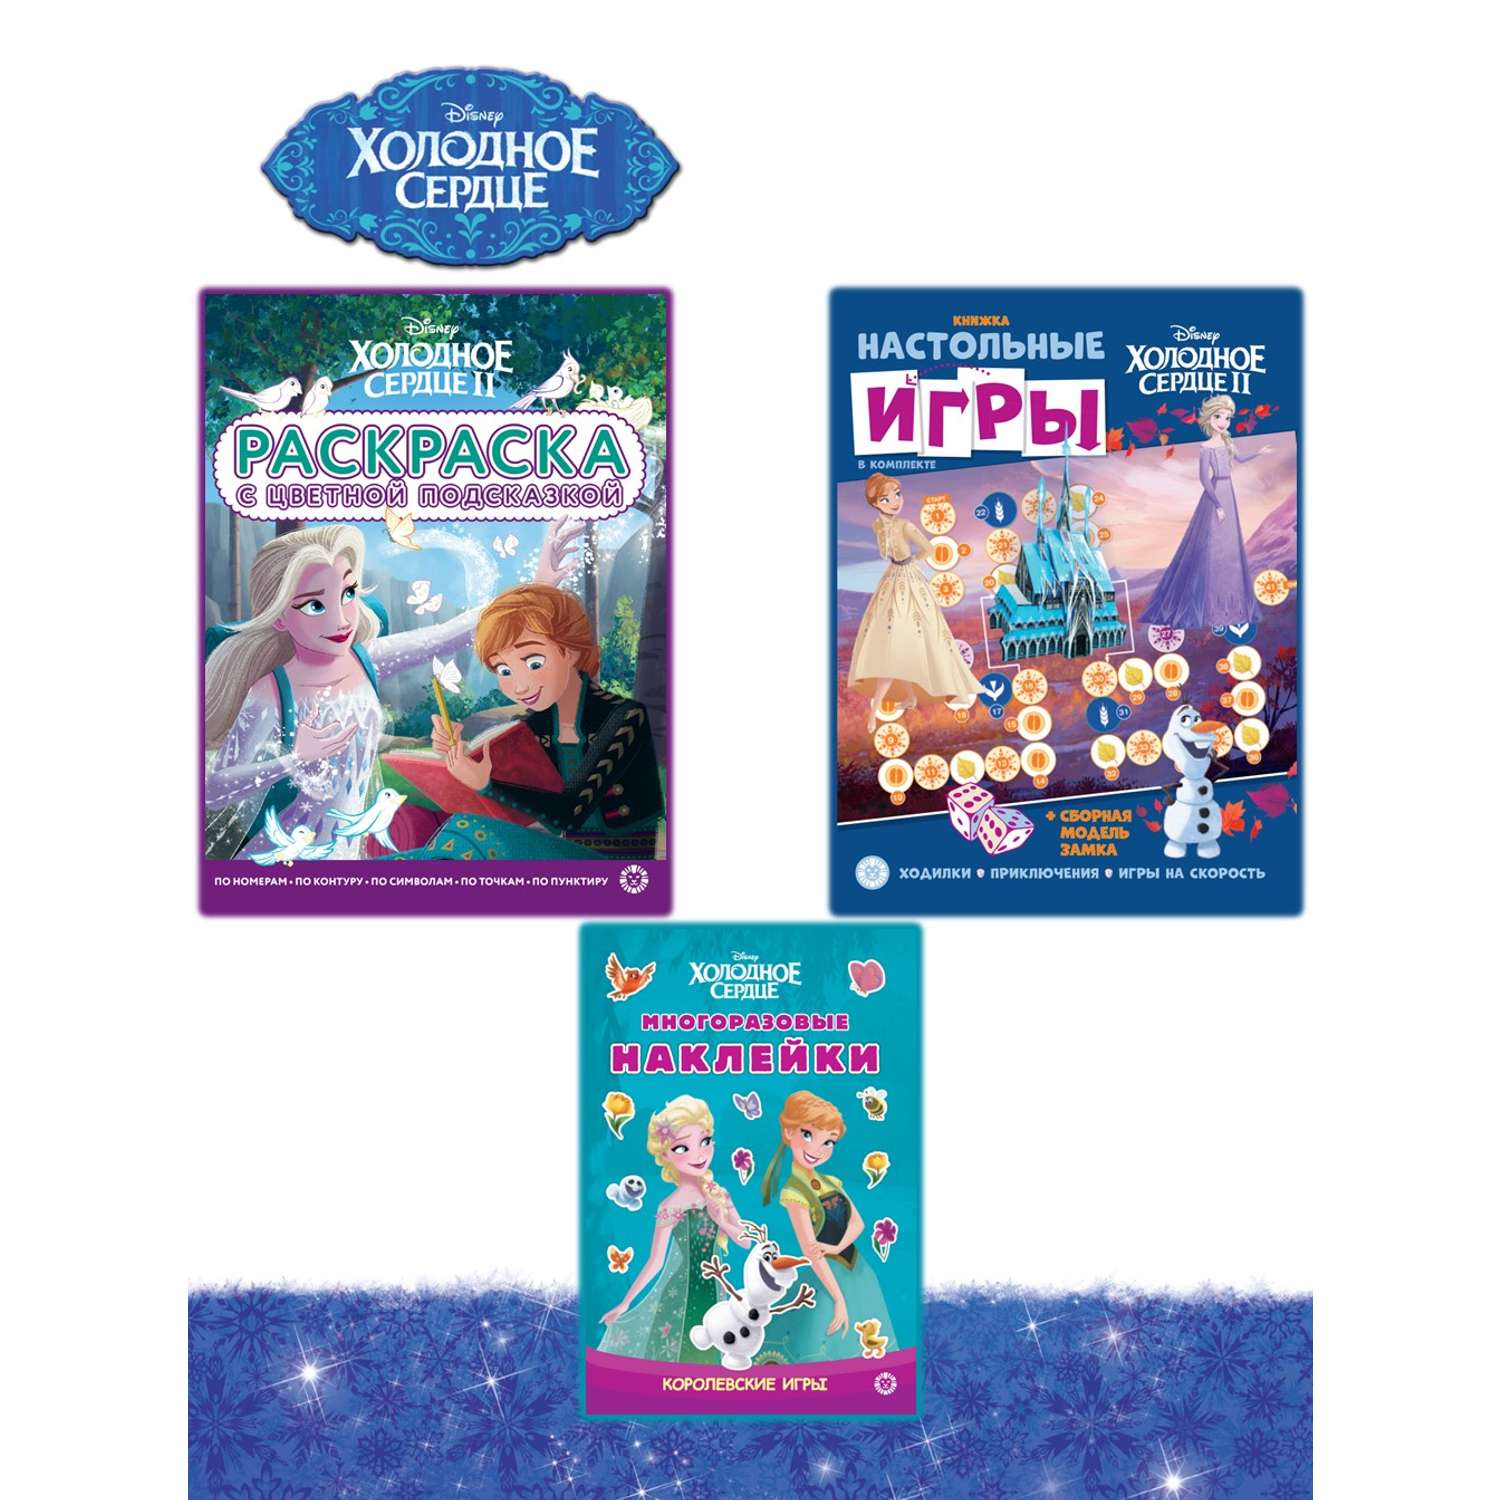 Комплект Disney Холодное сердце Сборник настольных игр + Многоразовые наклейки+ Раскраска - фото 1